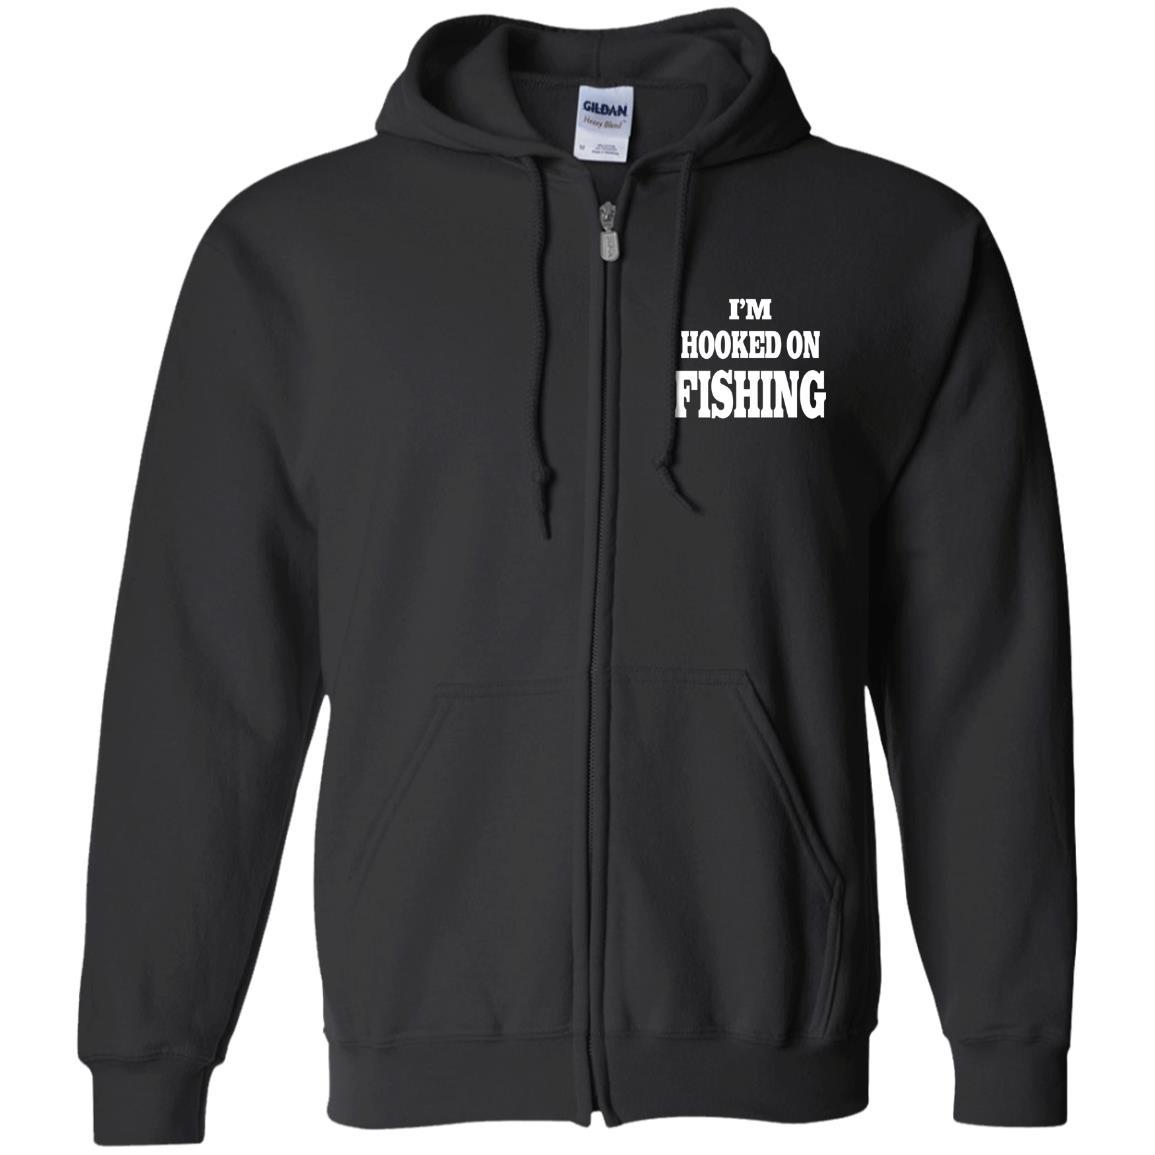 I'm hooked on fishing zip-up hoodie black